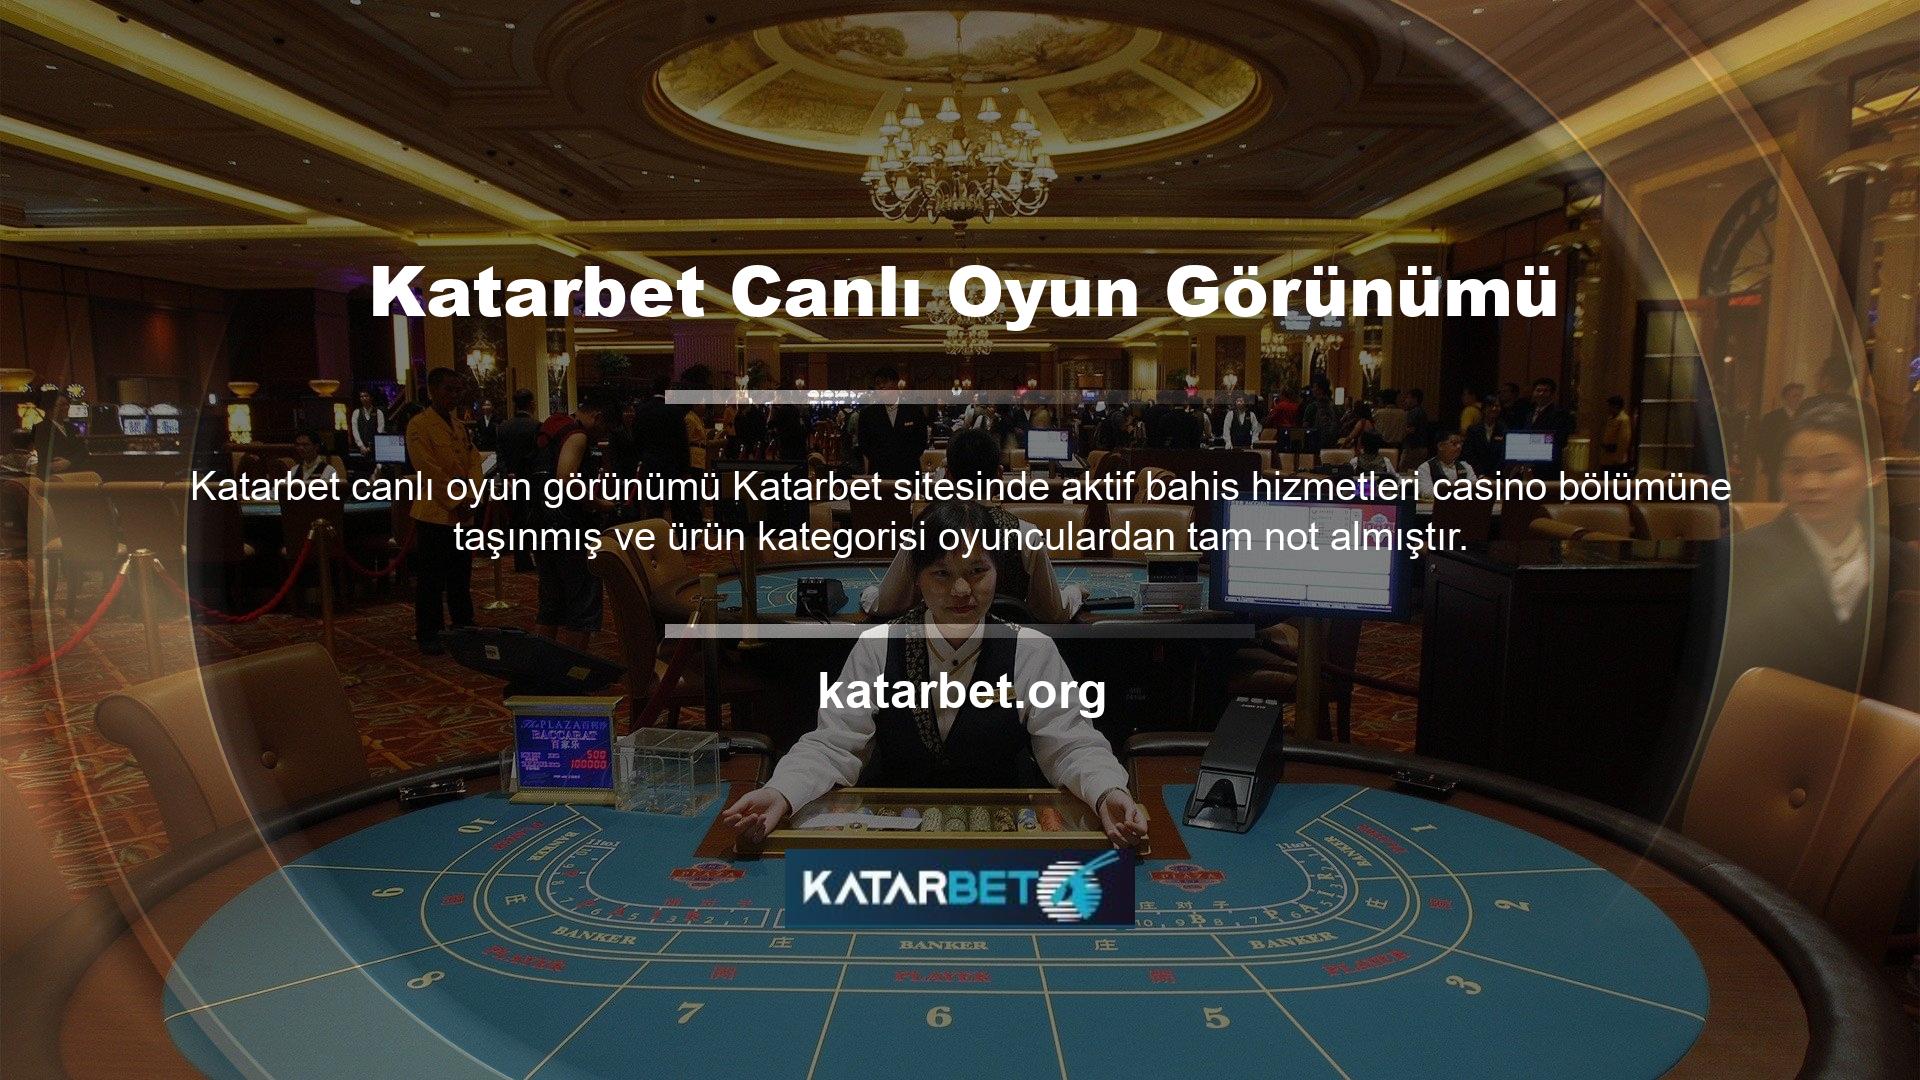 Katarbet internet sitesinin kendi platformu olan Katarbet TV'de maçları canlı izleyerek üyelerine komisyon ödemeden bahis yapma imkanı da sunmaktadır